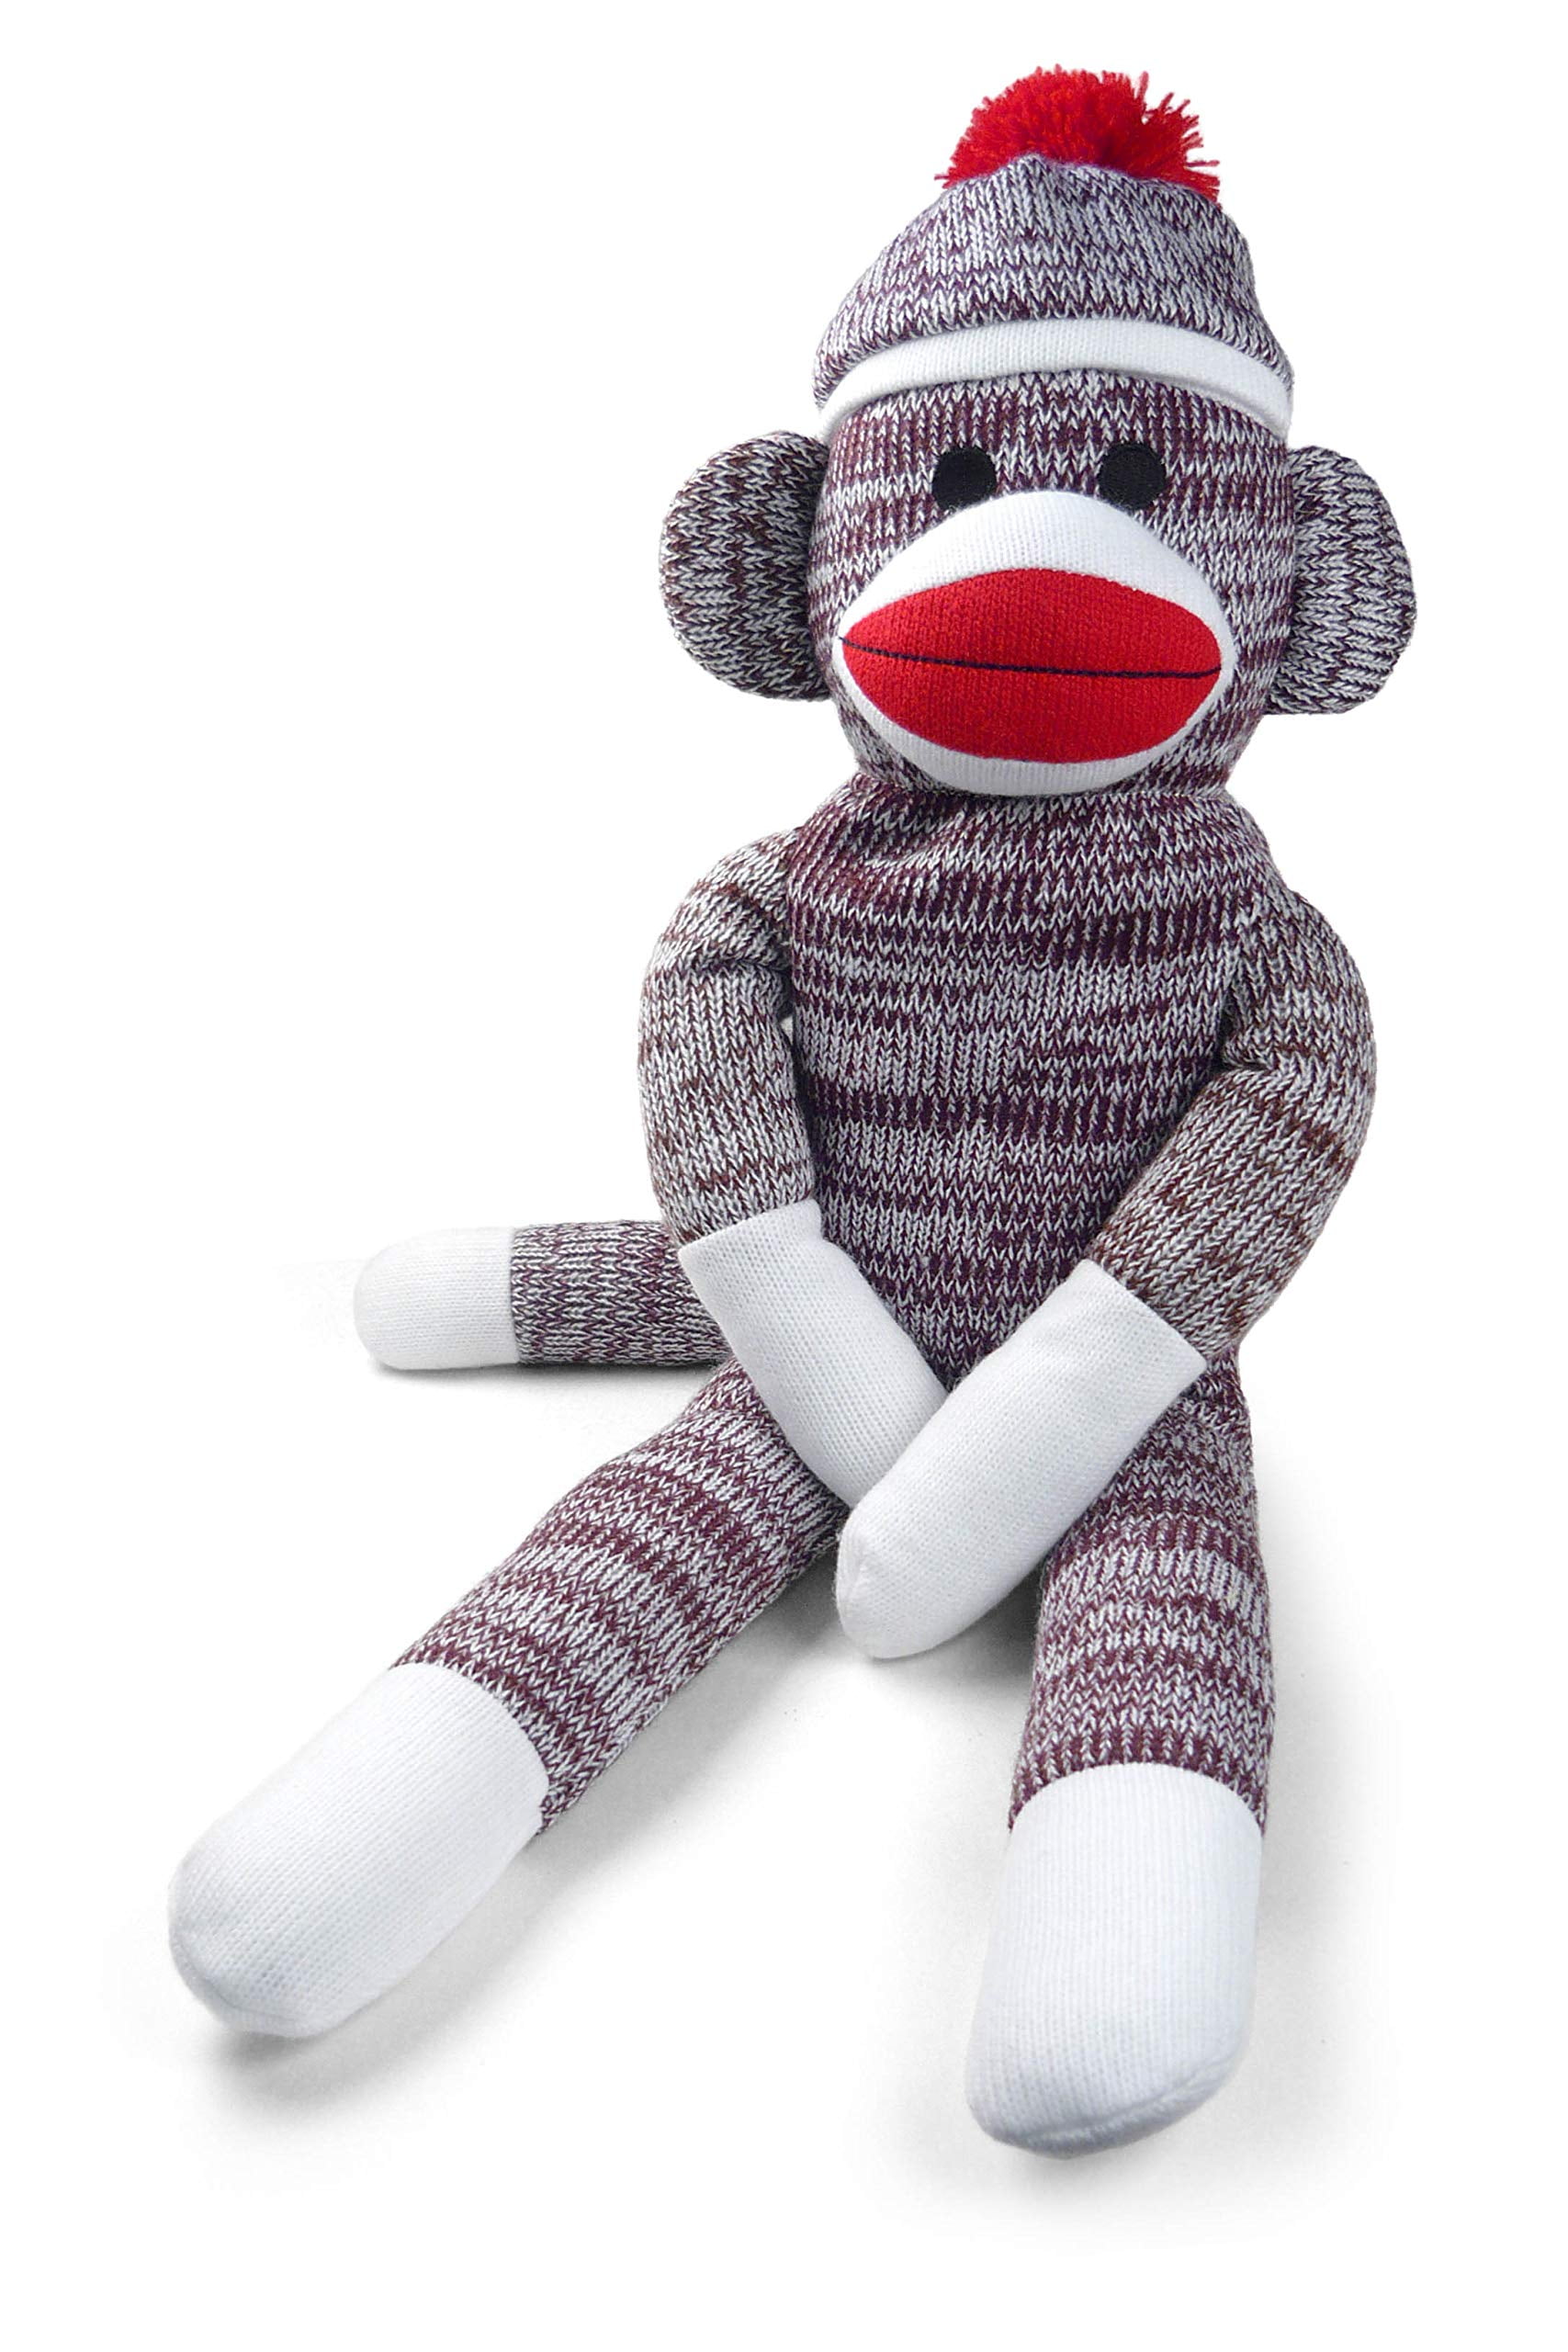 Plushland Sock Monkey Tall Plush Stuffed Animals Kids Toys Gifts Pink Soft 40" 